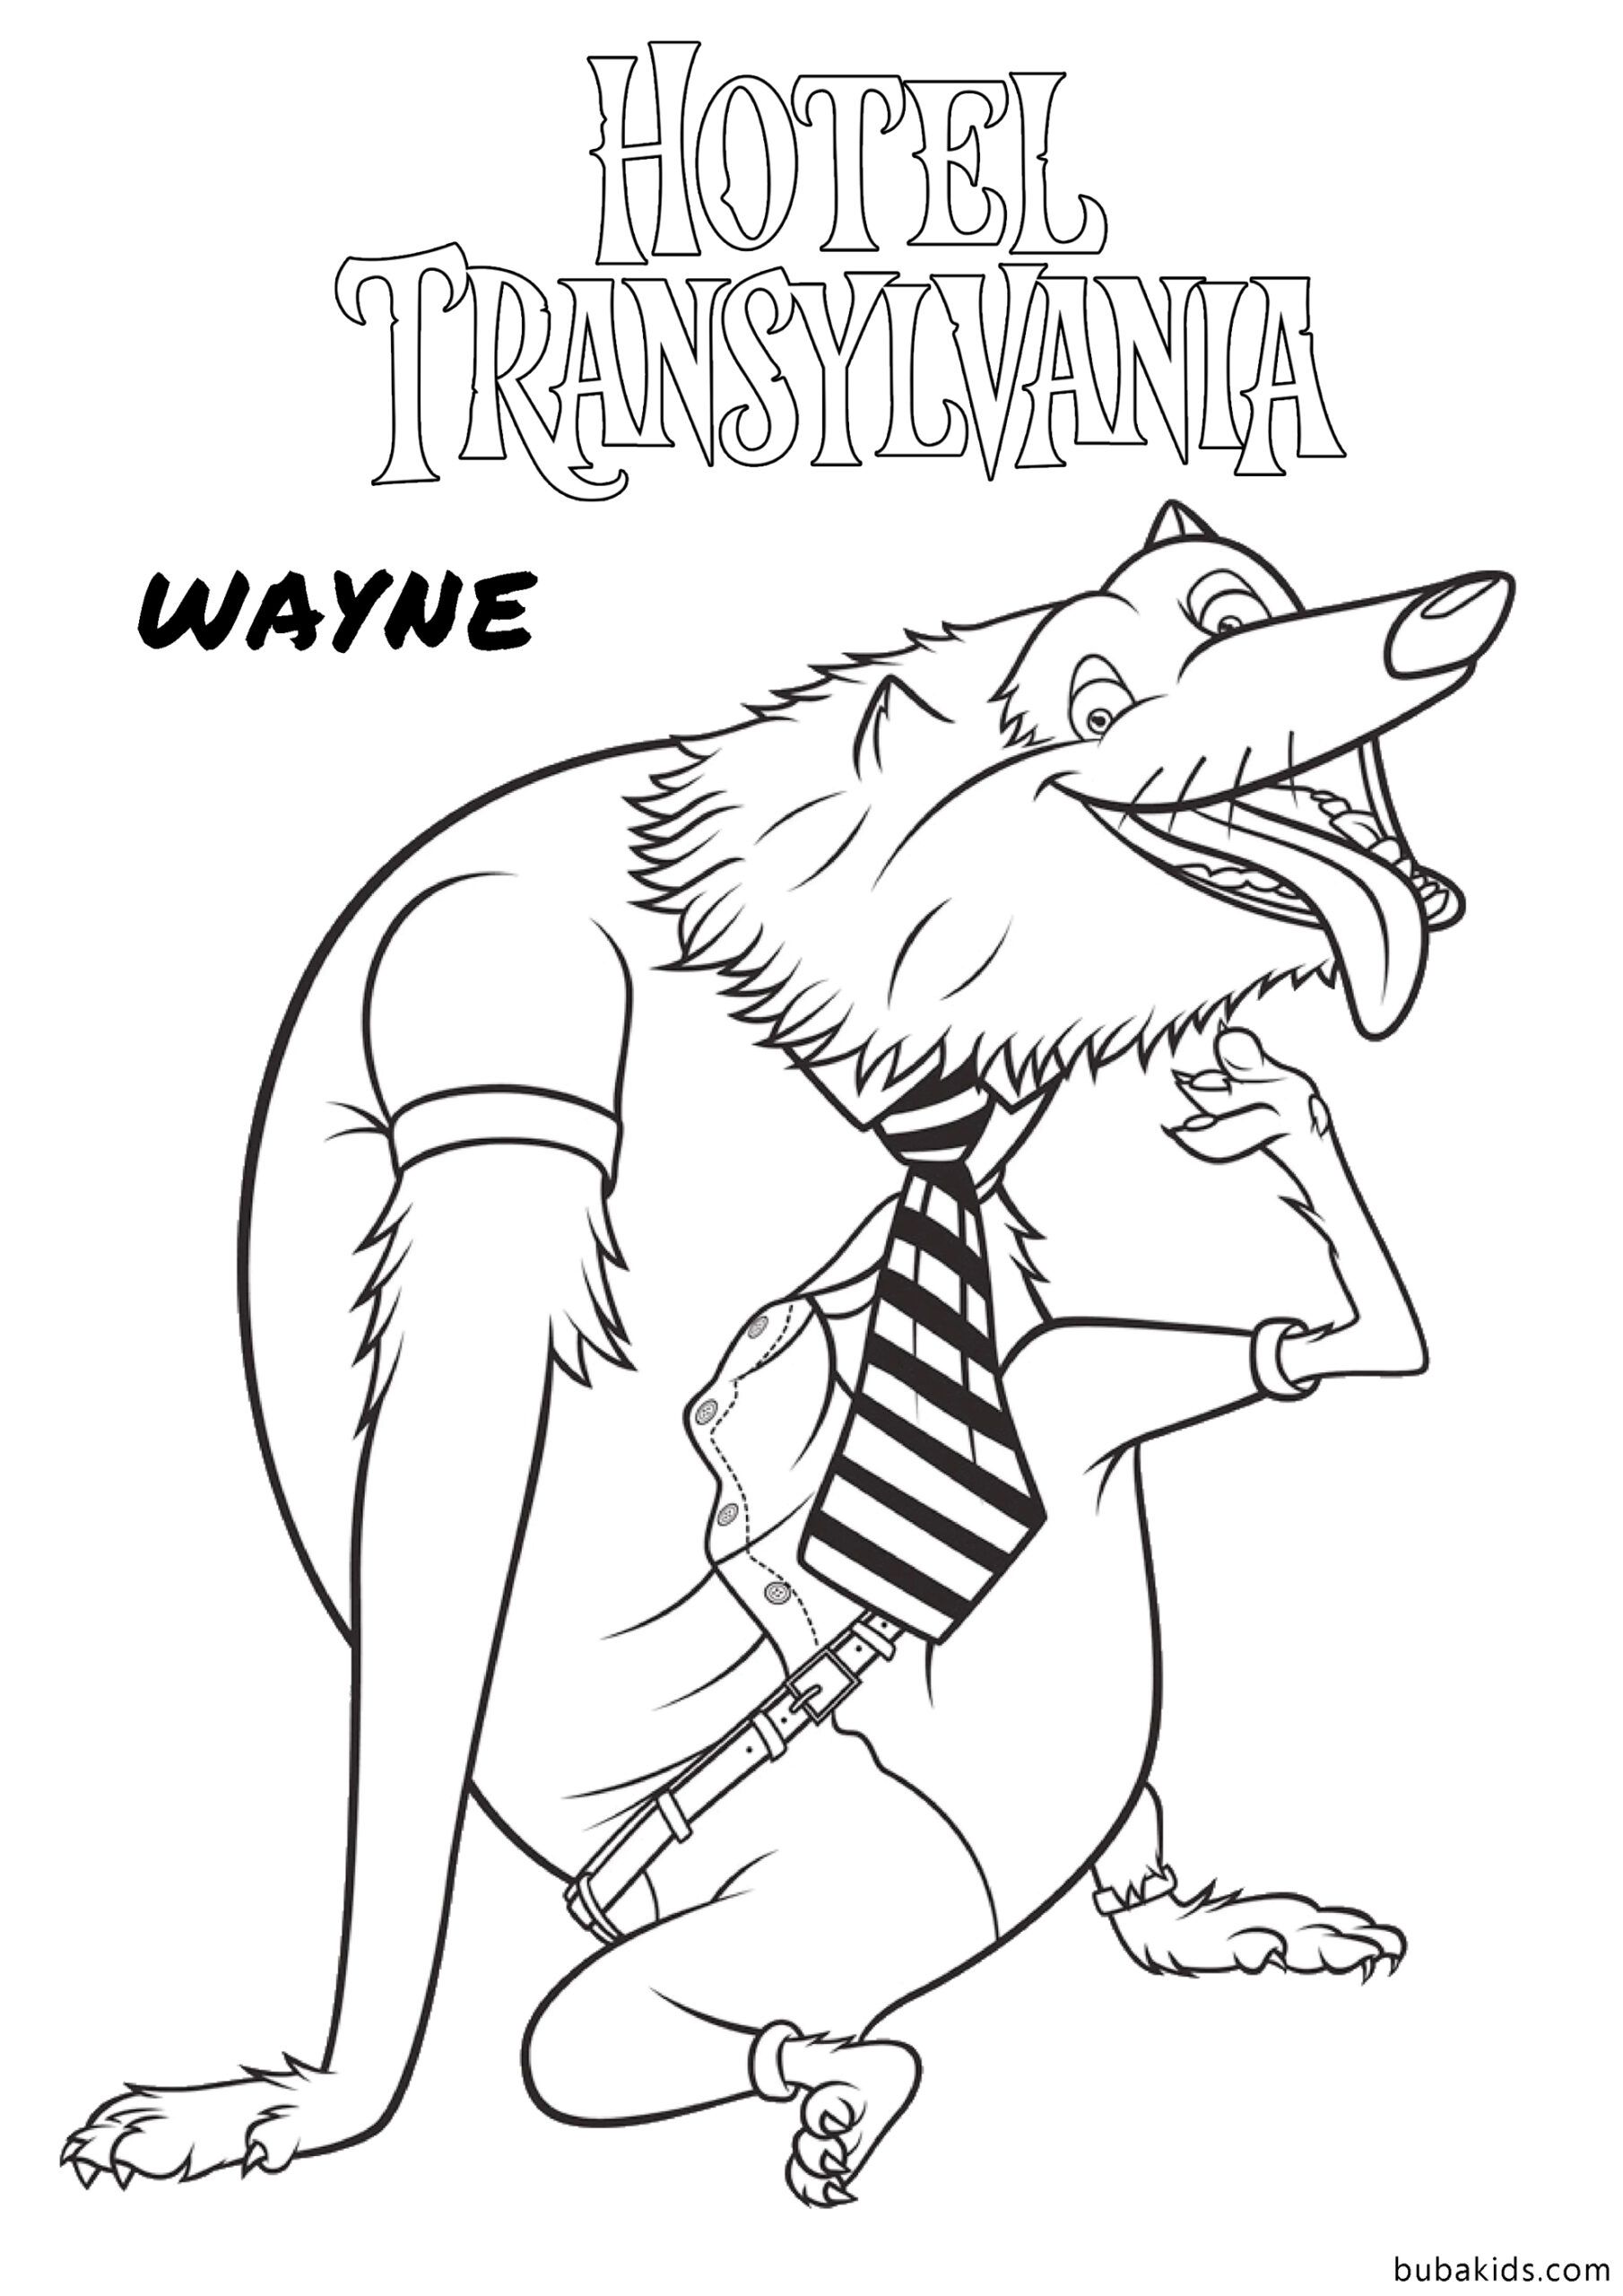 Wayne Werewolf Hotel Transylvania Coloring Page